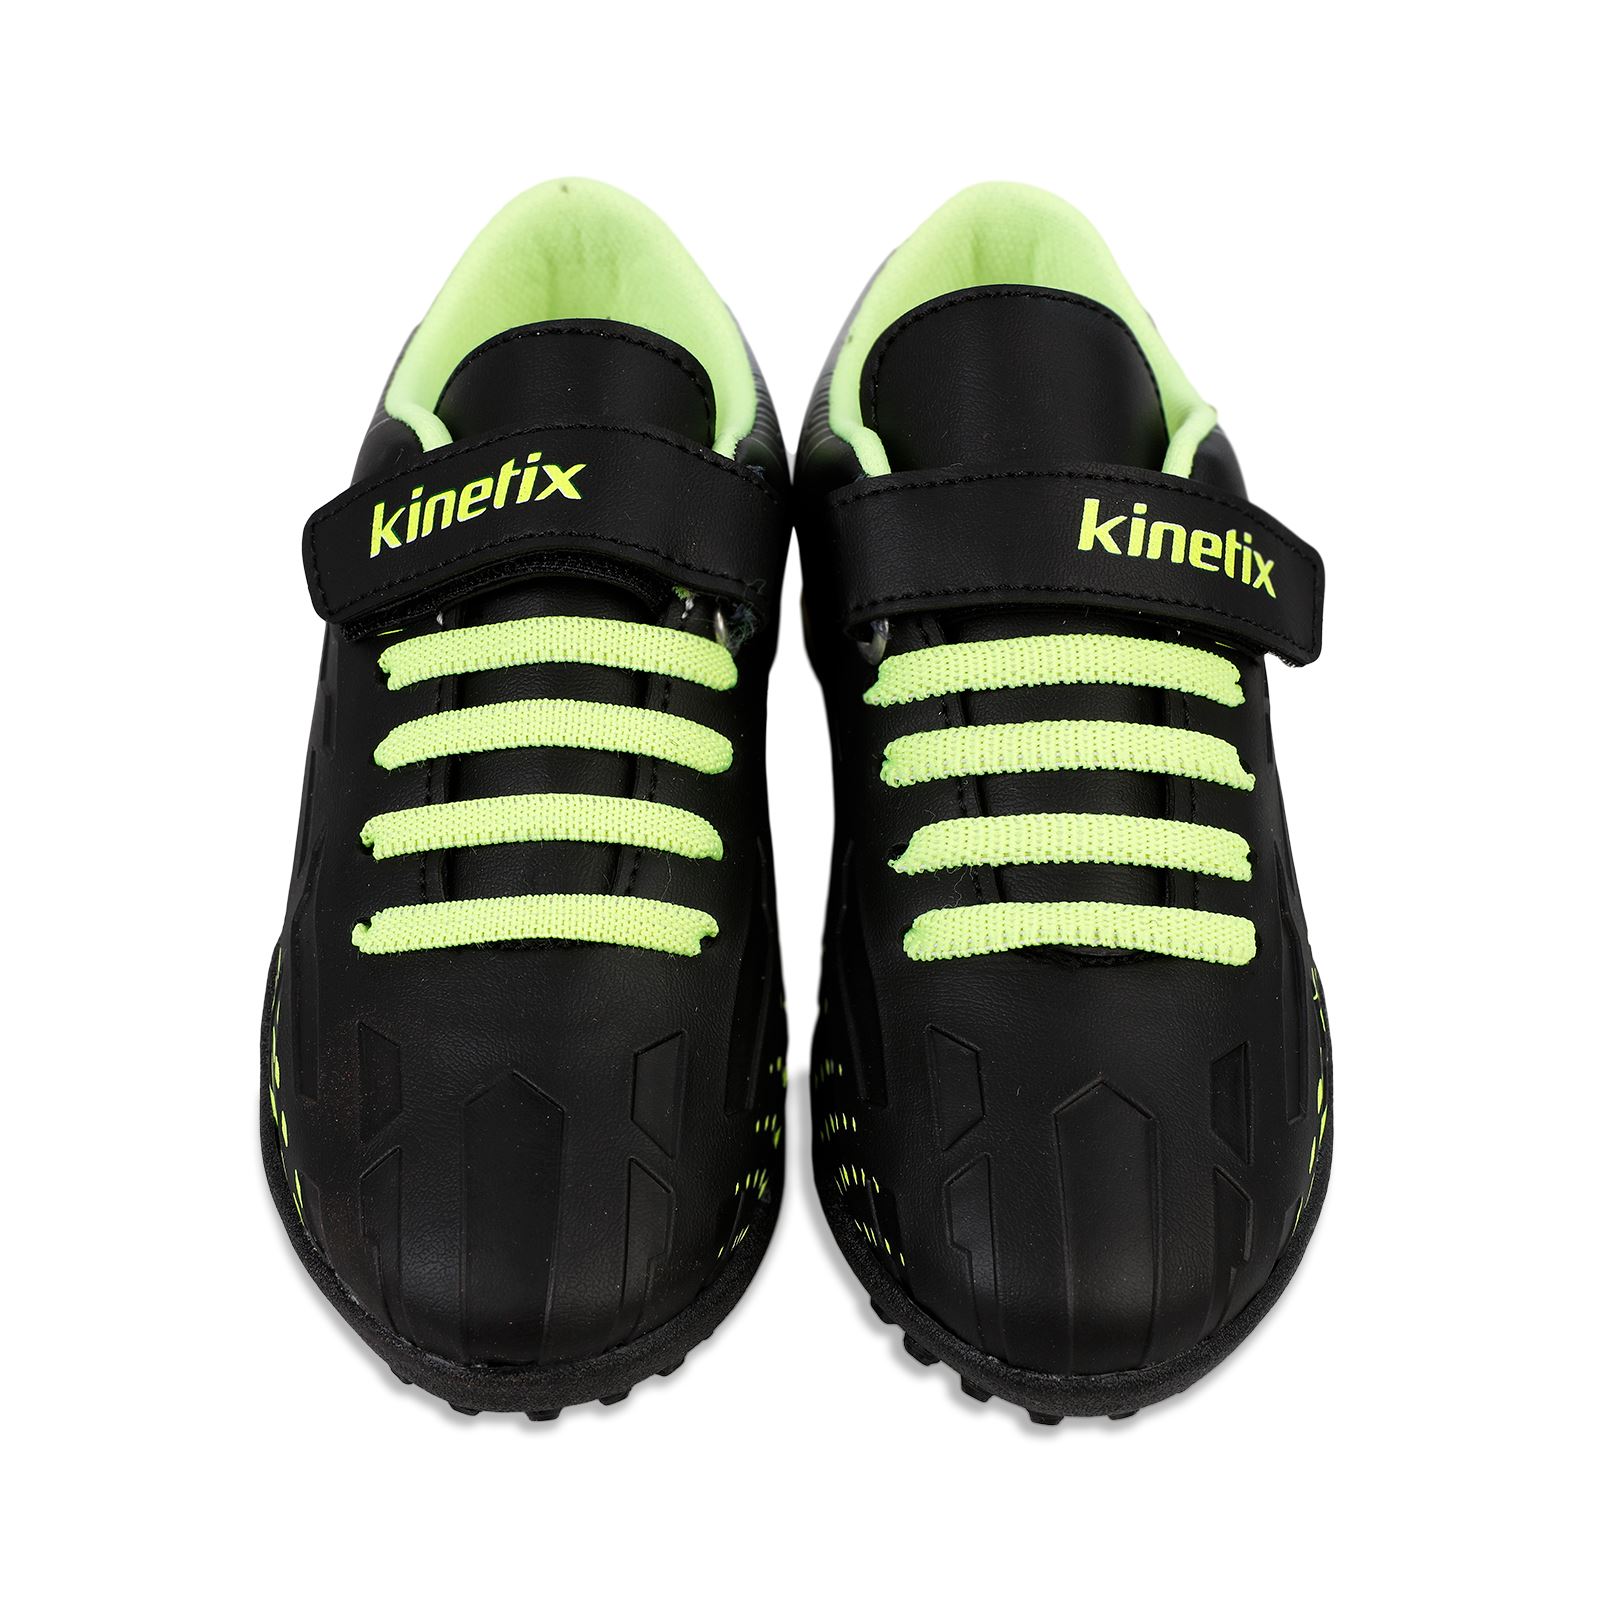 Kinetix Erkek Çocuk Halı Saha Ayakkabı 30-35 Numara Siyah